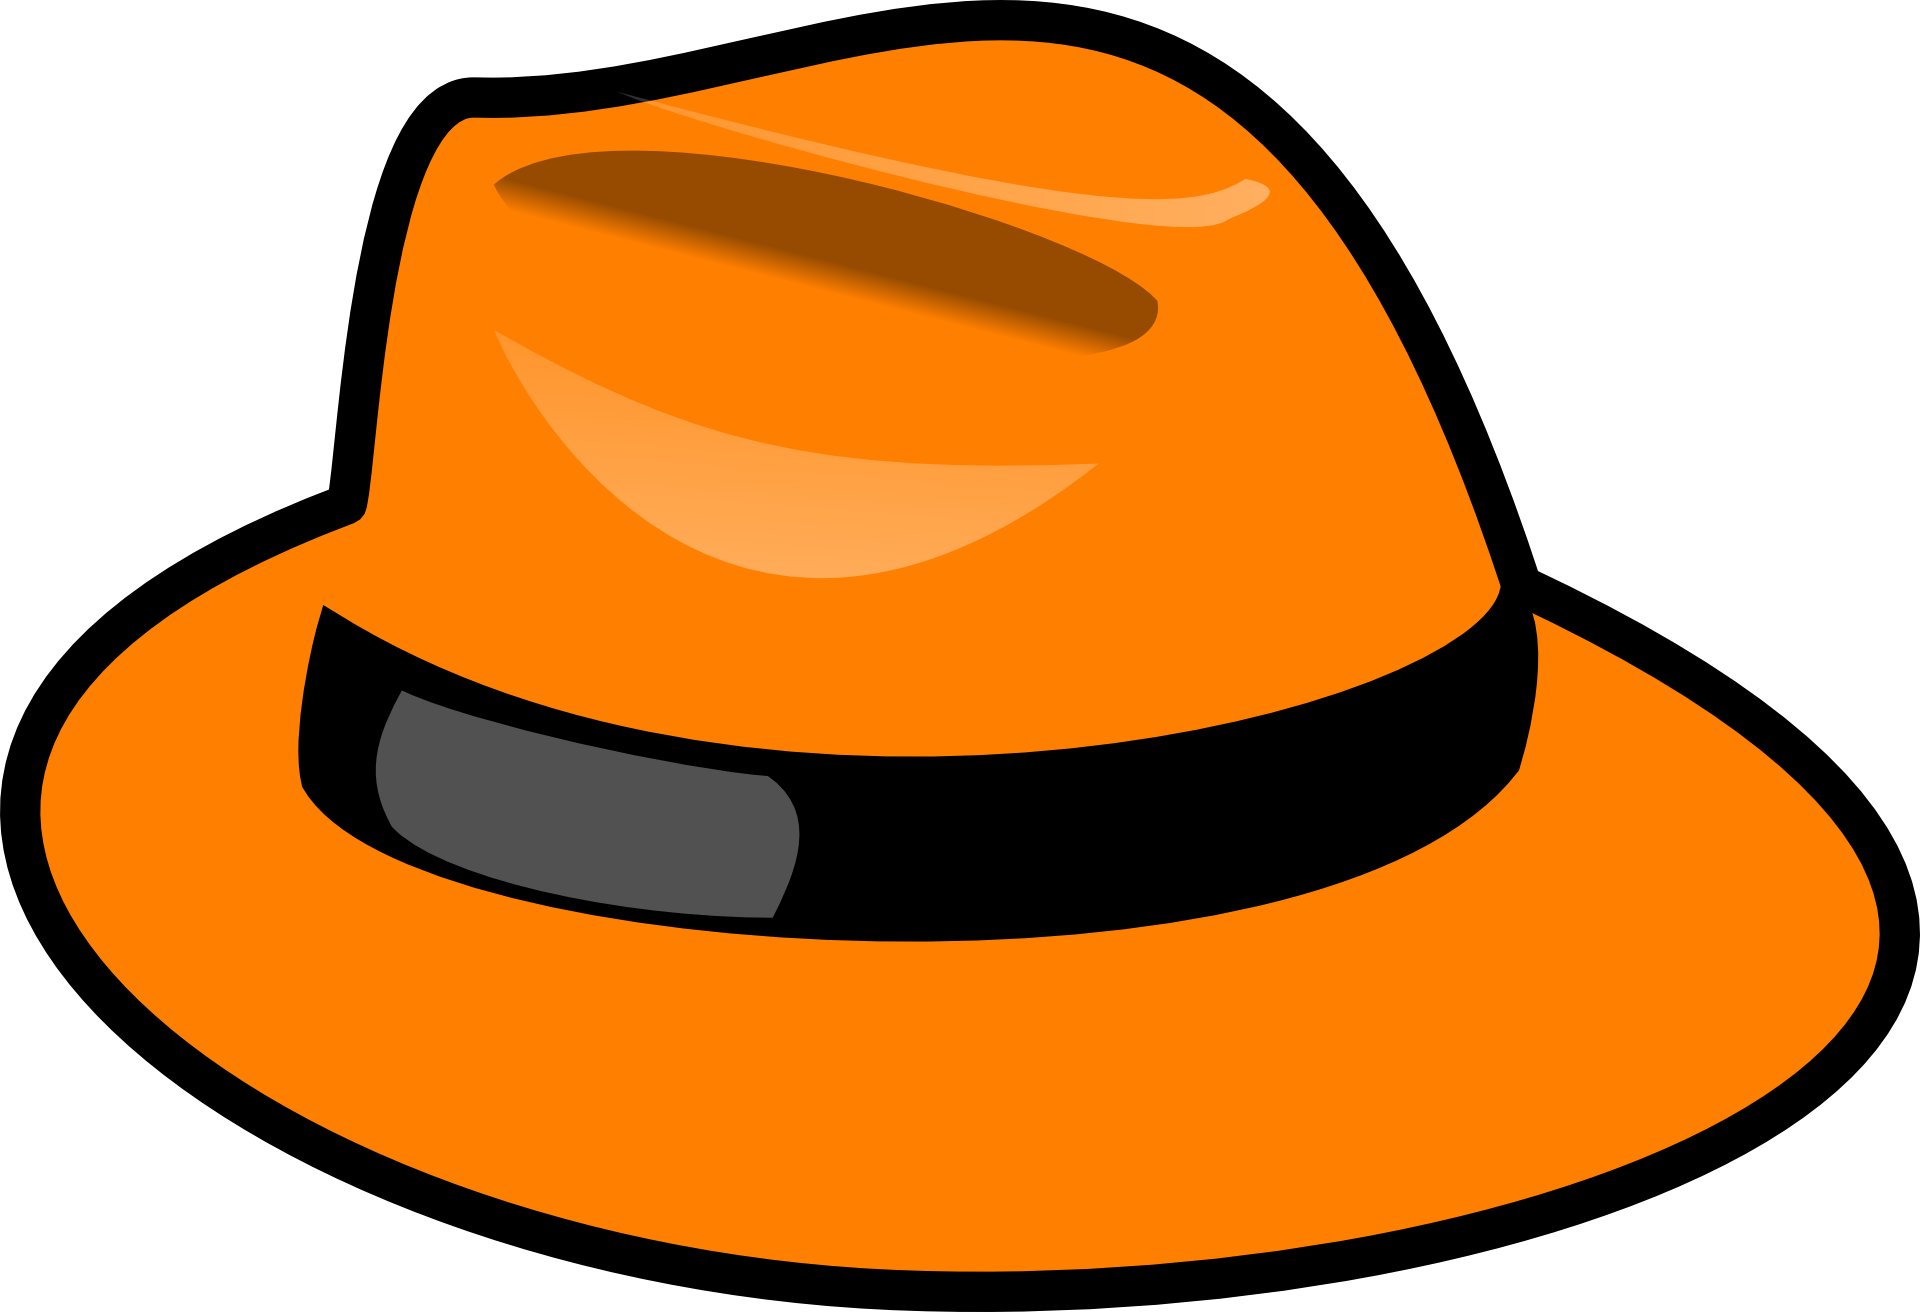 Home hat. Шляпы мультяшные. Мультяшные шляпки. Шляпа оранжевая. Шляпа рисунок.